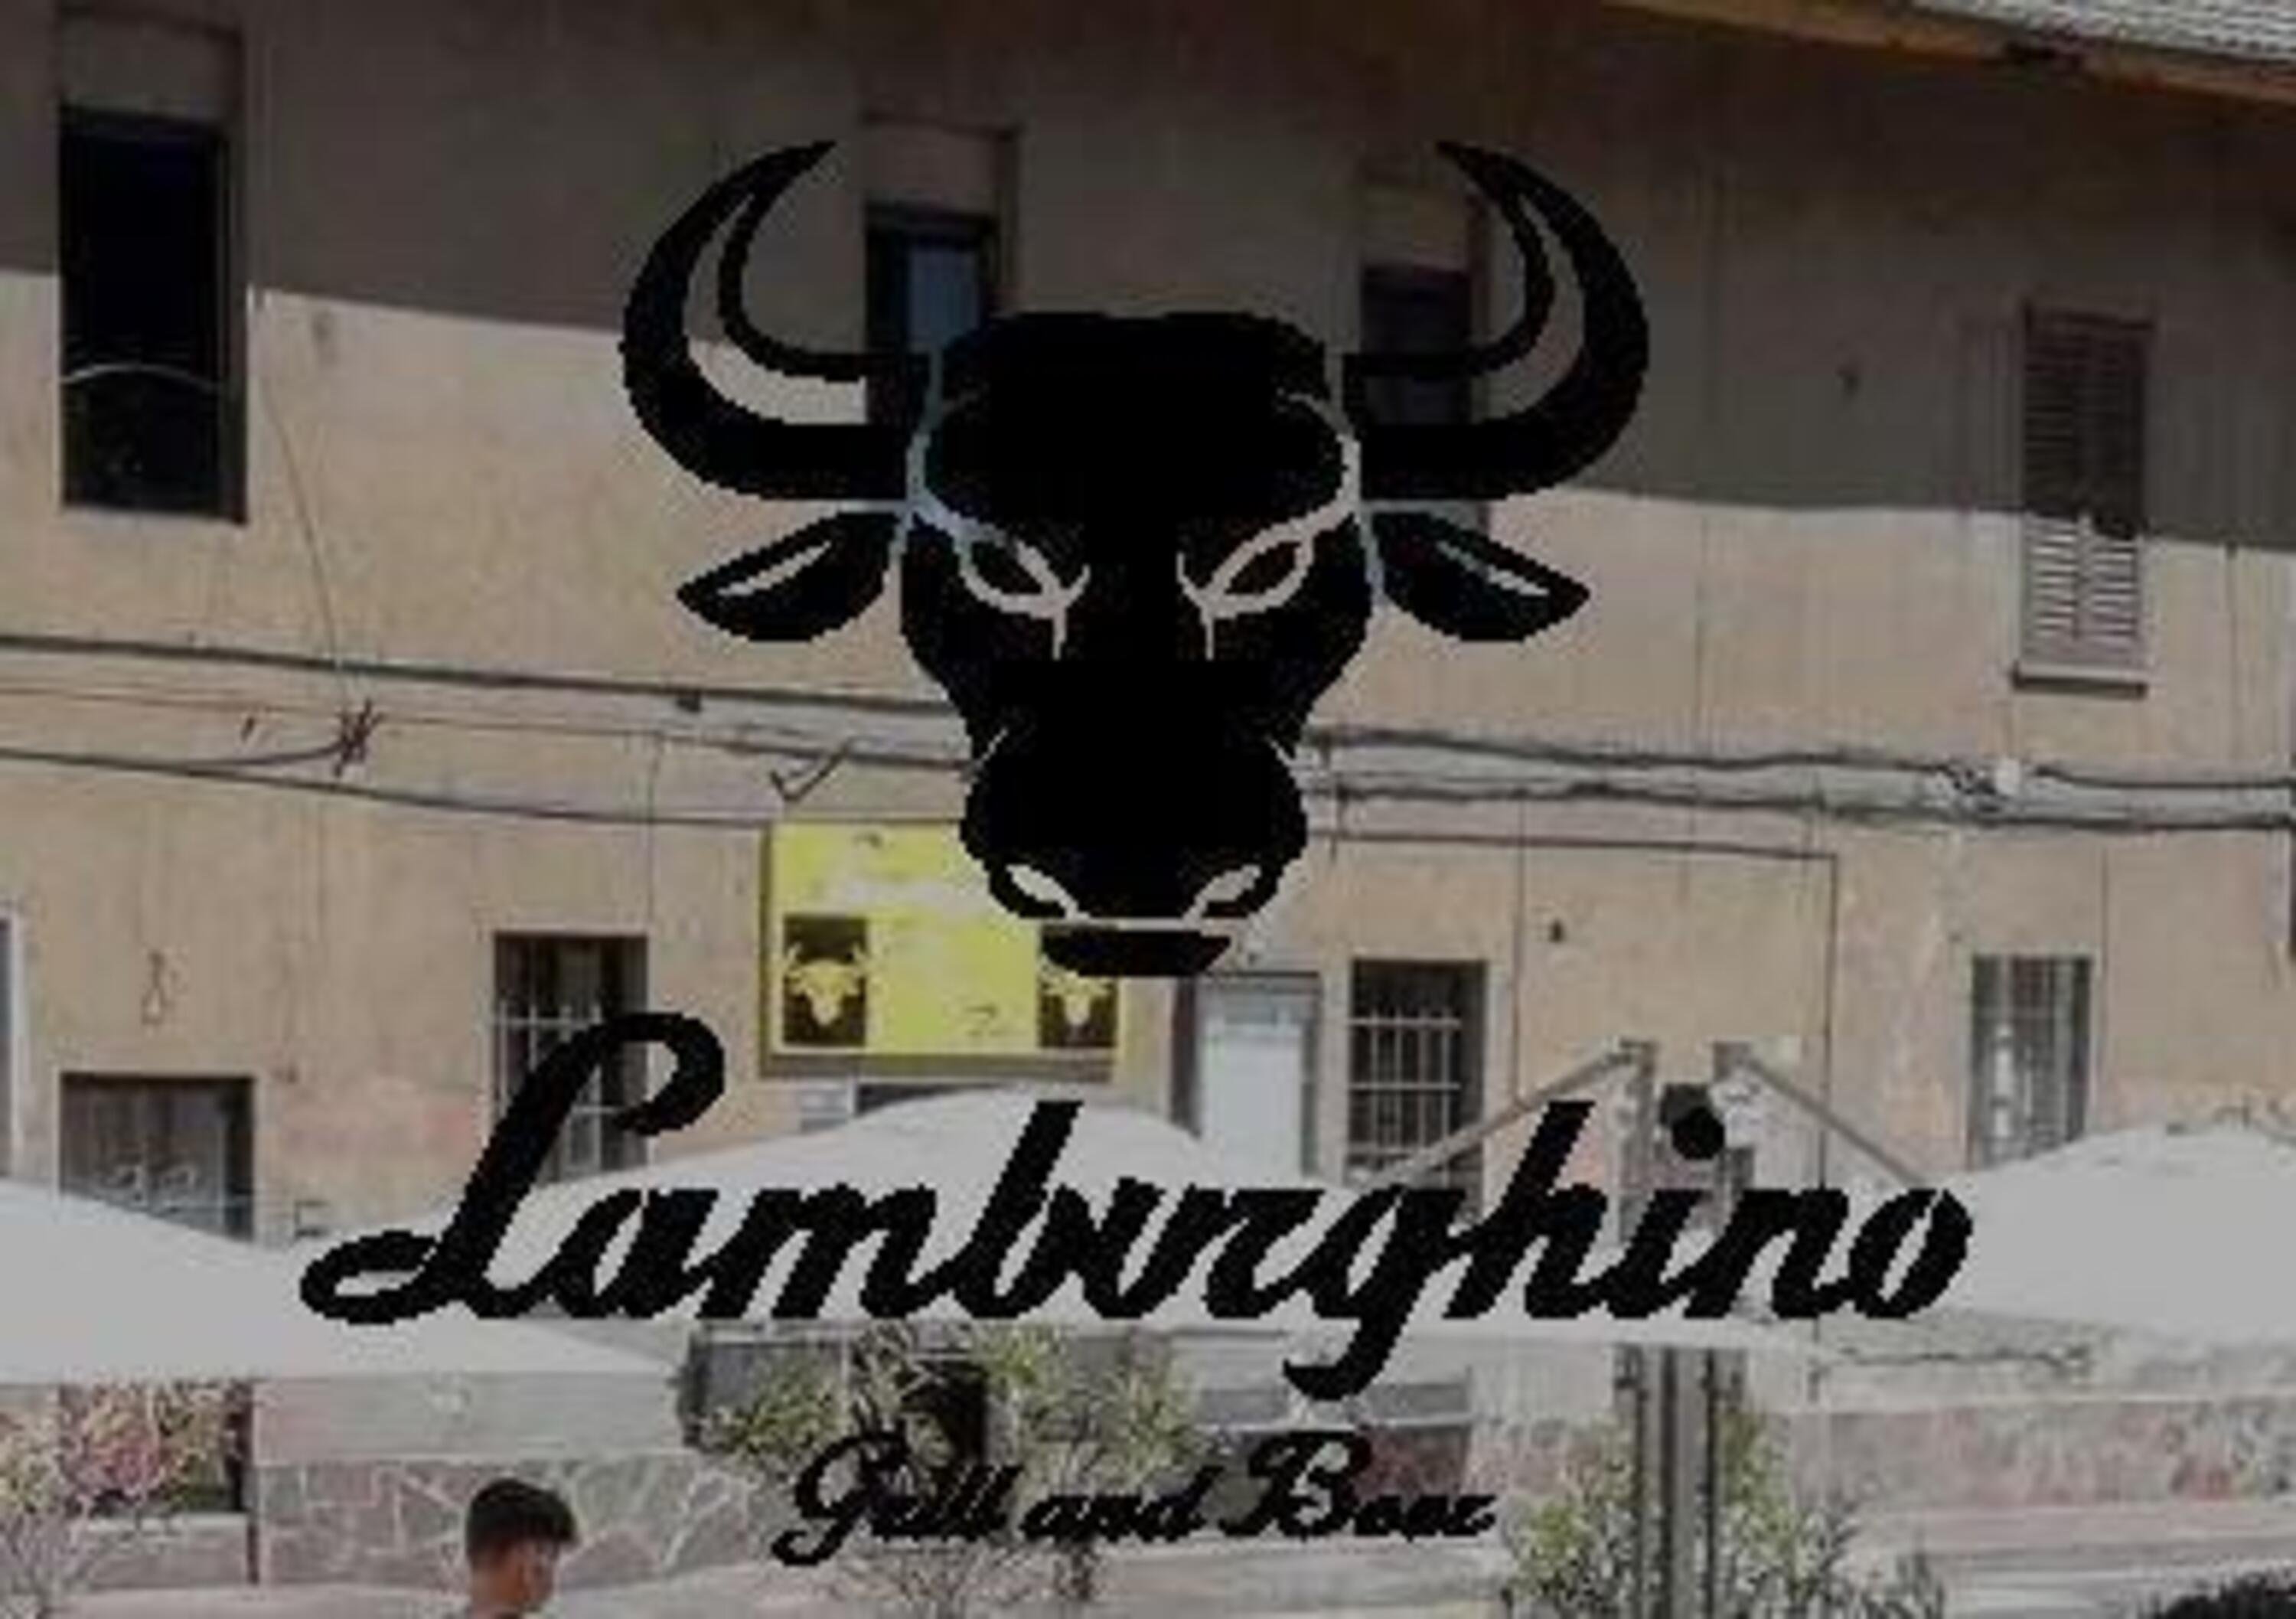 Lamborghini fa causa a &ldquo;Lamburghino&rdquo;: chiesti 200mila euro per concorrenza sleale e sfruttamento del marchio